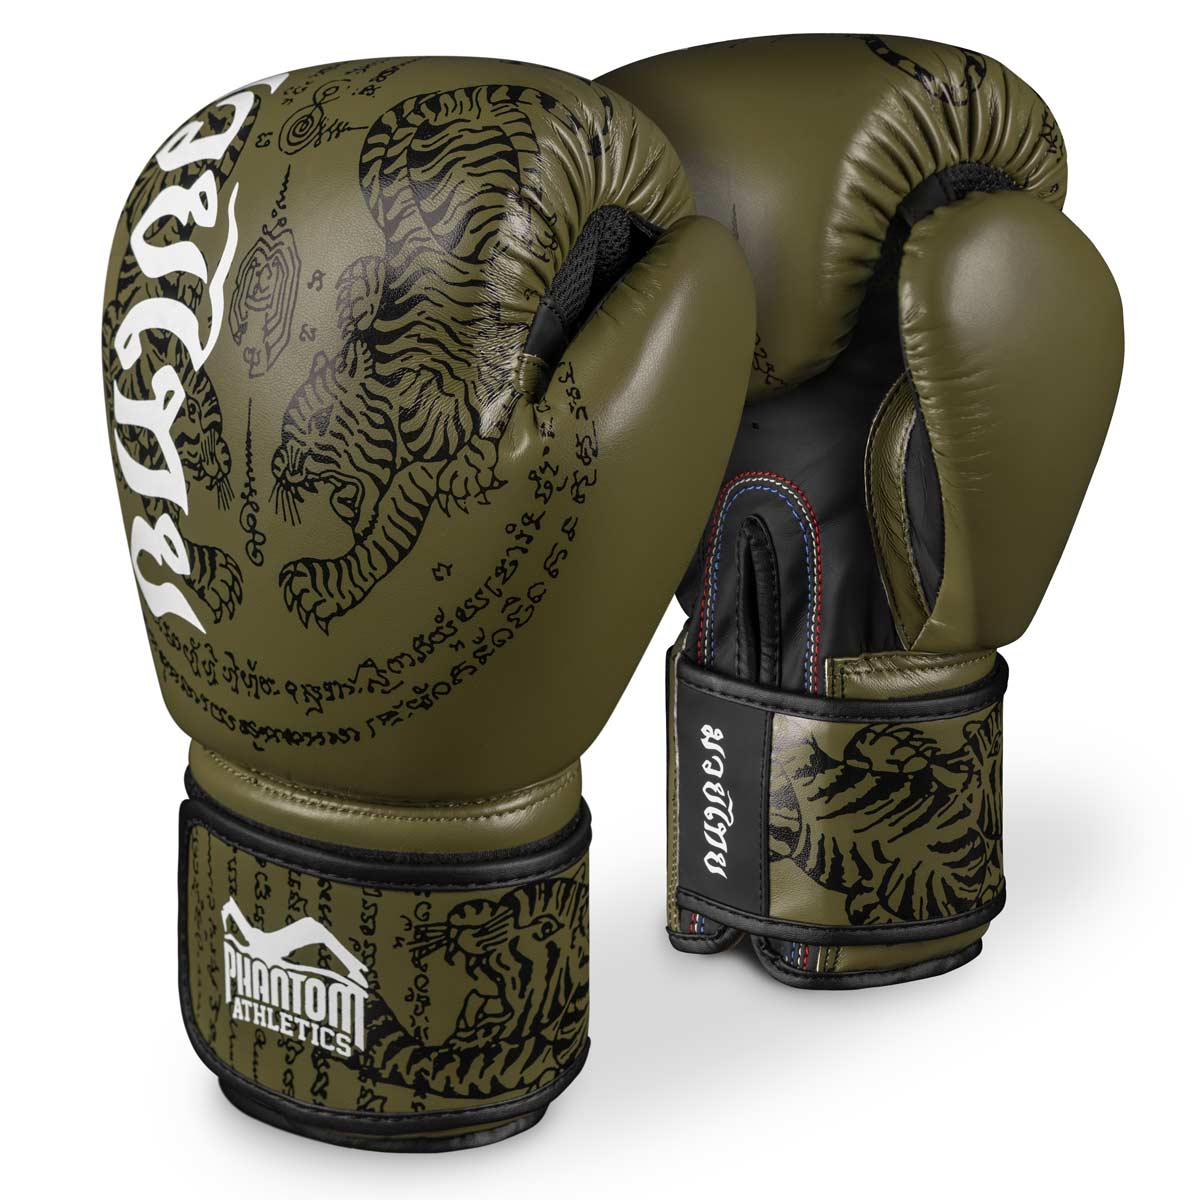 Phantom Muay Thai boksačke rukavice s tajlandskim printom u vojnozelenoj boji. Sak Yant dizajn.